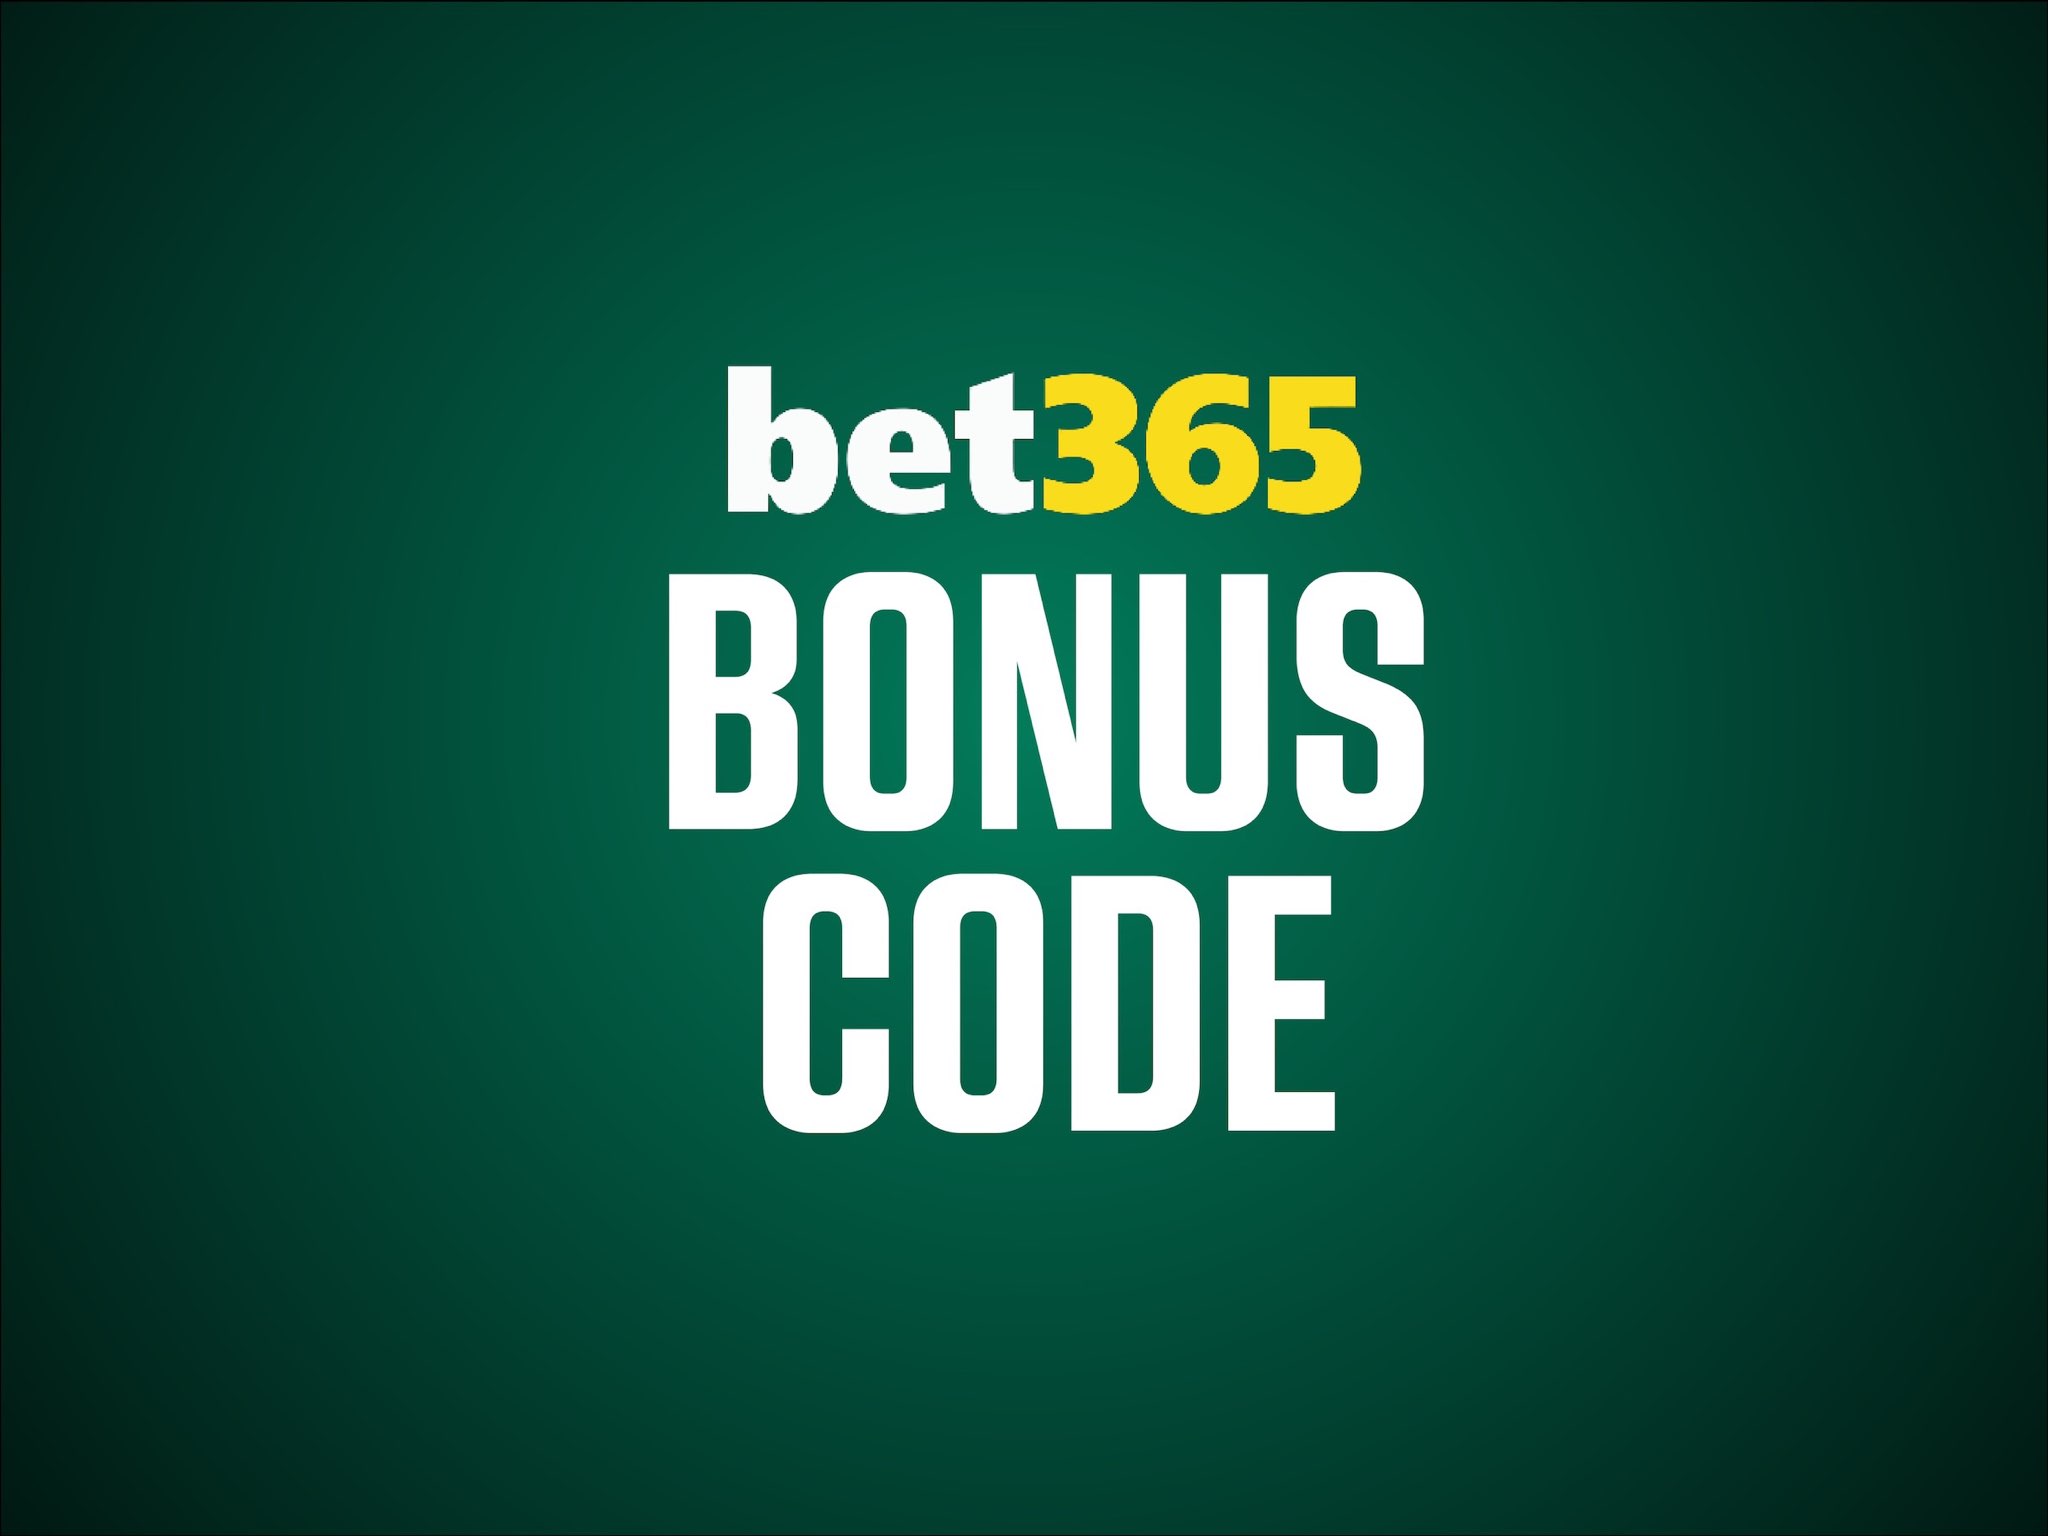 Bet365 Bonus Code BDCBONUS for £30 Free Bets (July 2023)